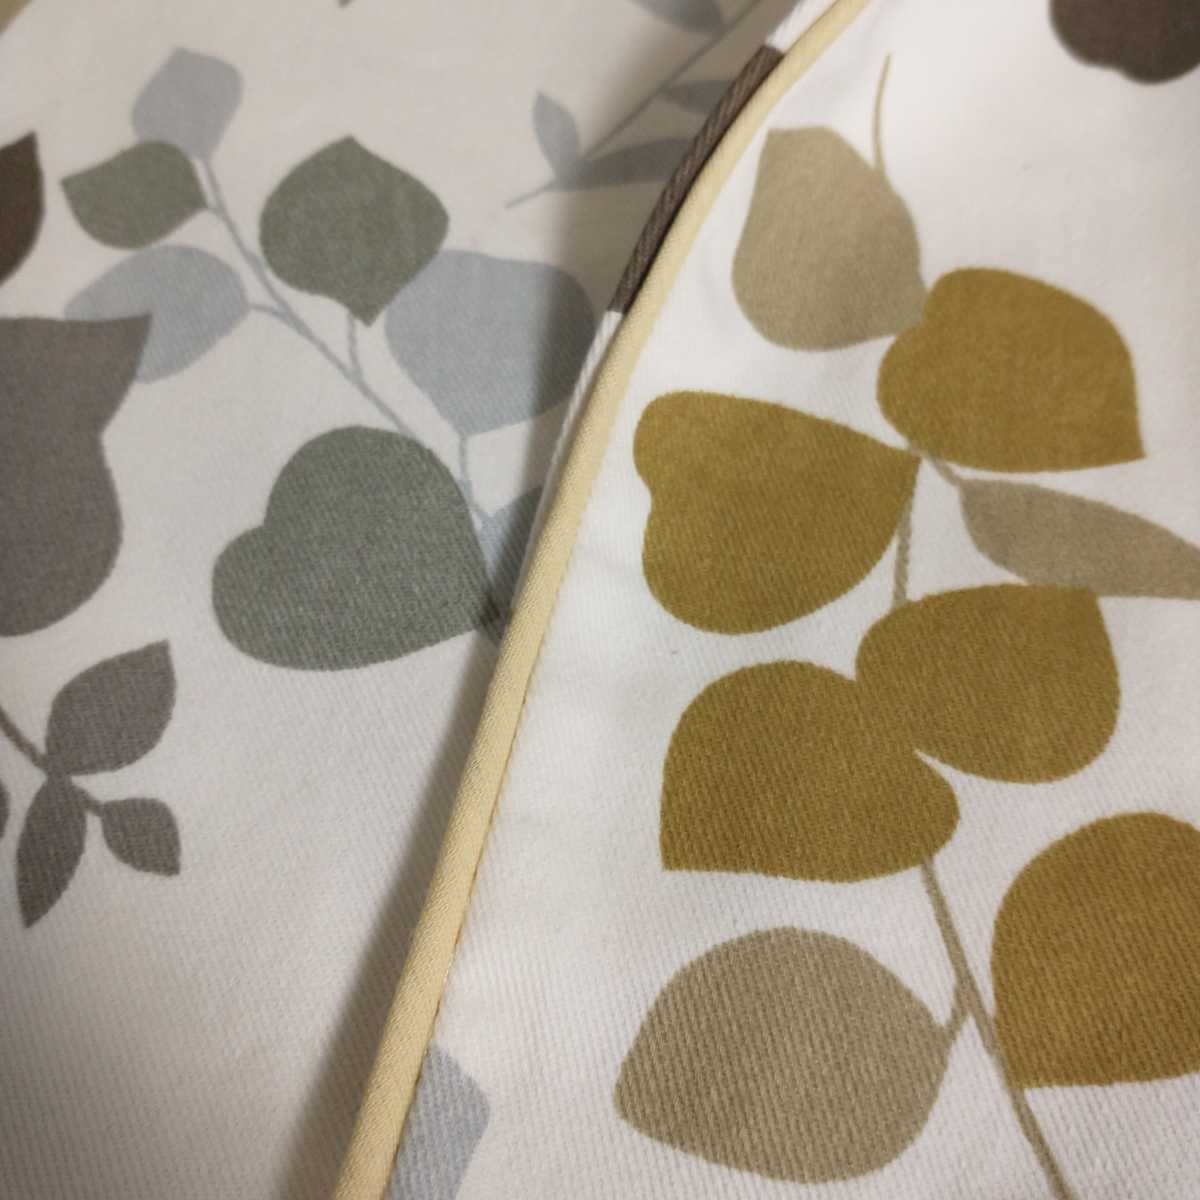  новый товар ... покрытие 2 шт. комплект 43×63 хлопок 100% leaf рисунок оттенок бежевого желтый Северная Европа модный постельные принадлежности pillow кейс #tnftnf